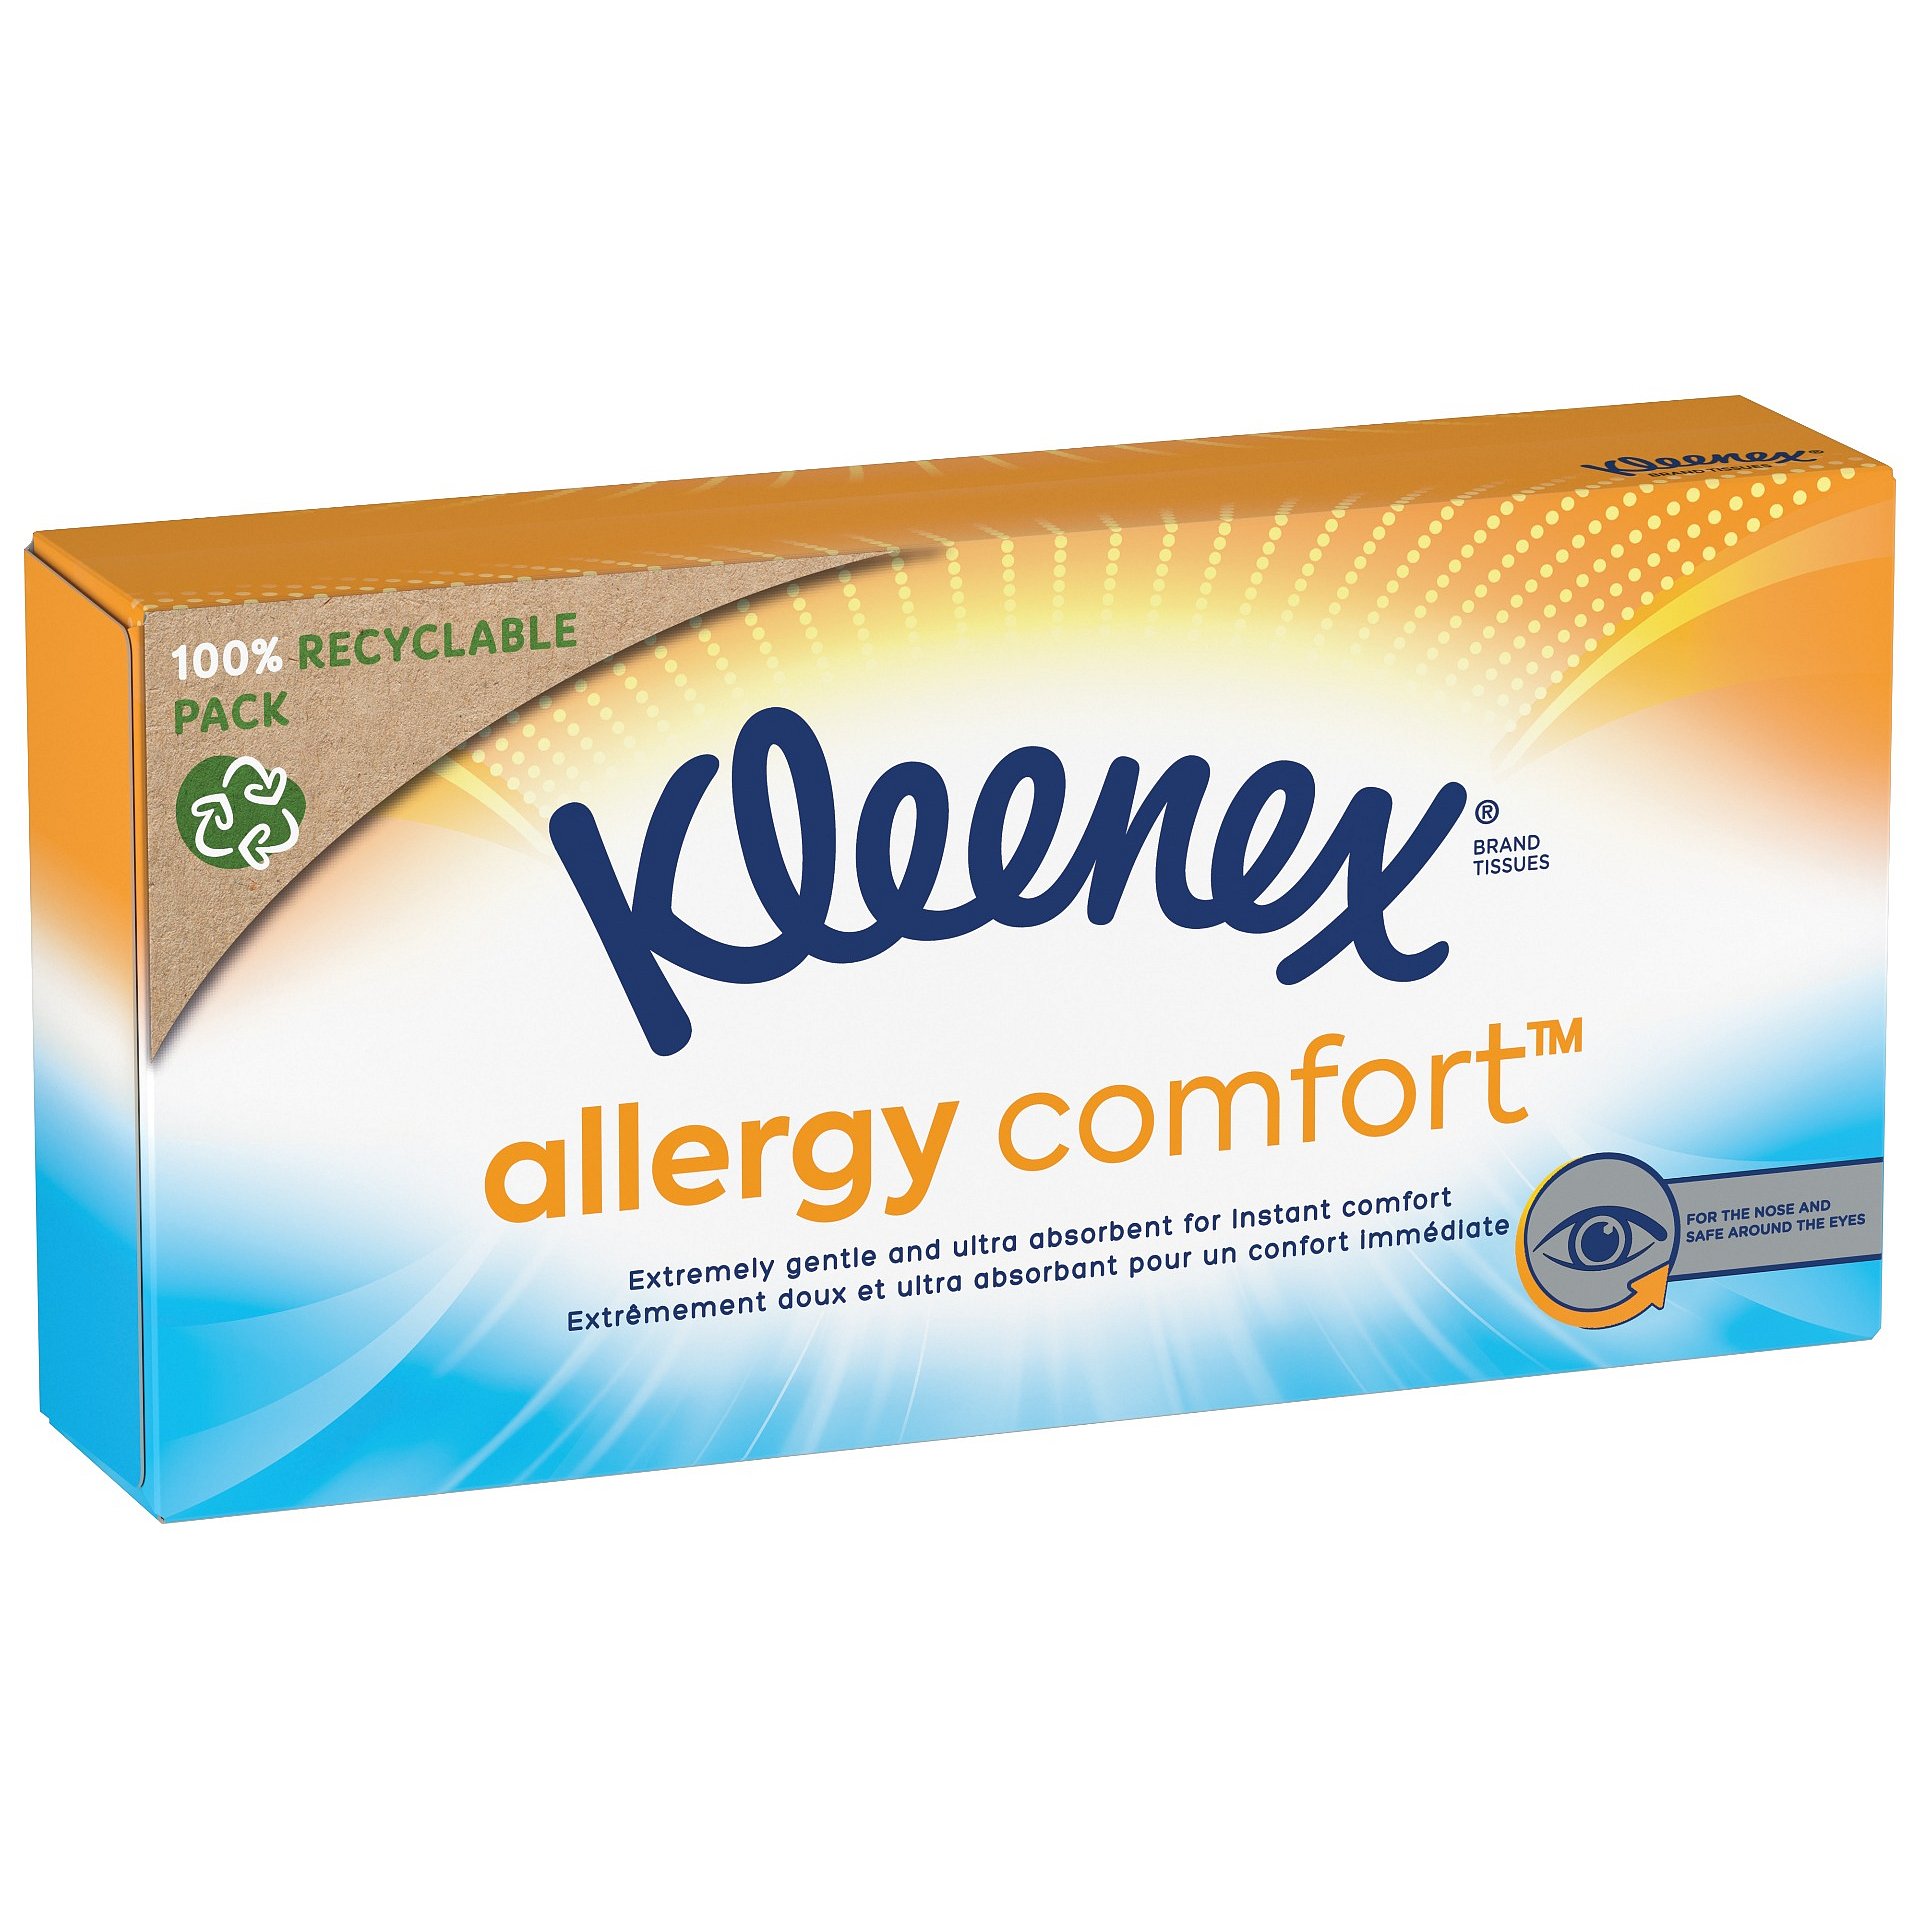 Kleenex Allergy Comfort Box papírové kapesníky 56 ks